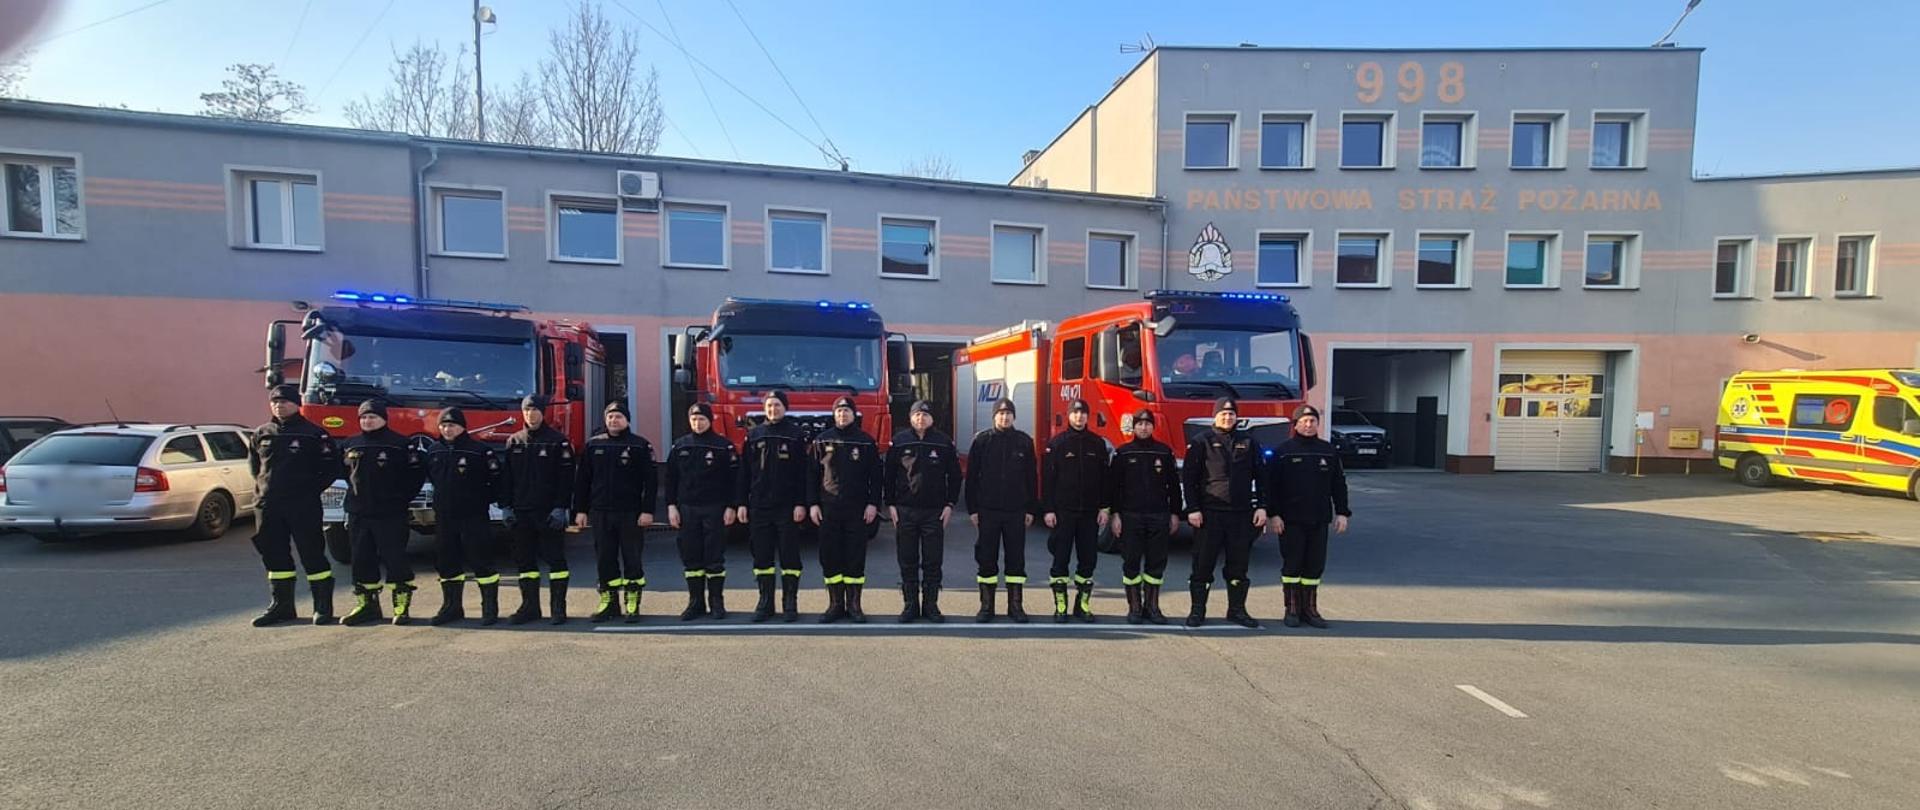 Obraz przedstawia strażaków JRG Jawor podczas zmiany służby podczas której minutą ciszy uczczono pamięć poległych strażaków z Ukrainy. Strażacy stoją w szeregu. W tle samochody pożarnicze i budynek komendy. Pora dzienna.